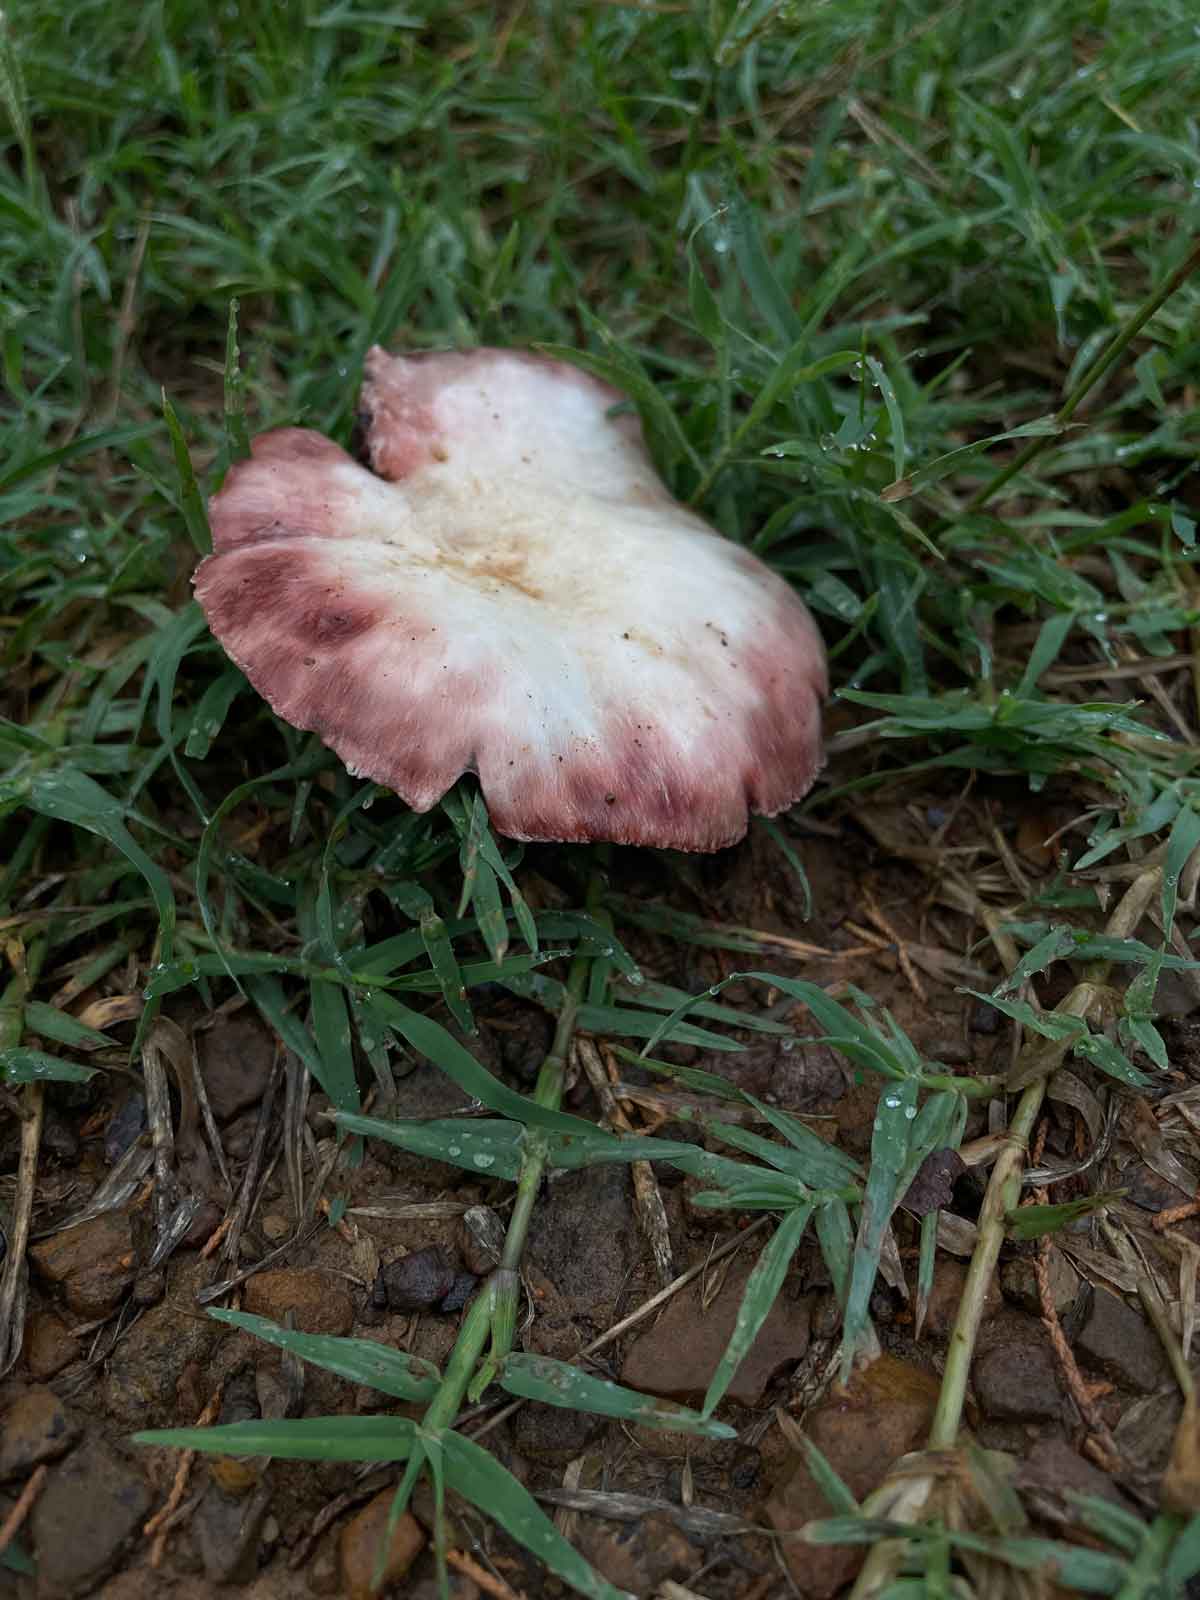 Unknown fungi.